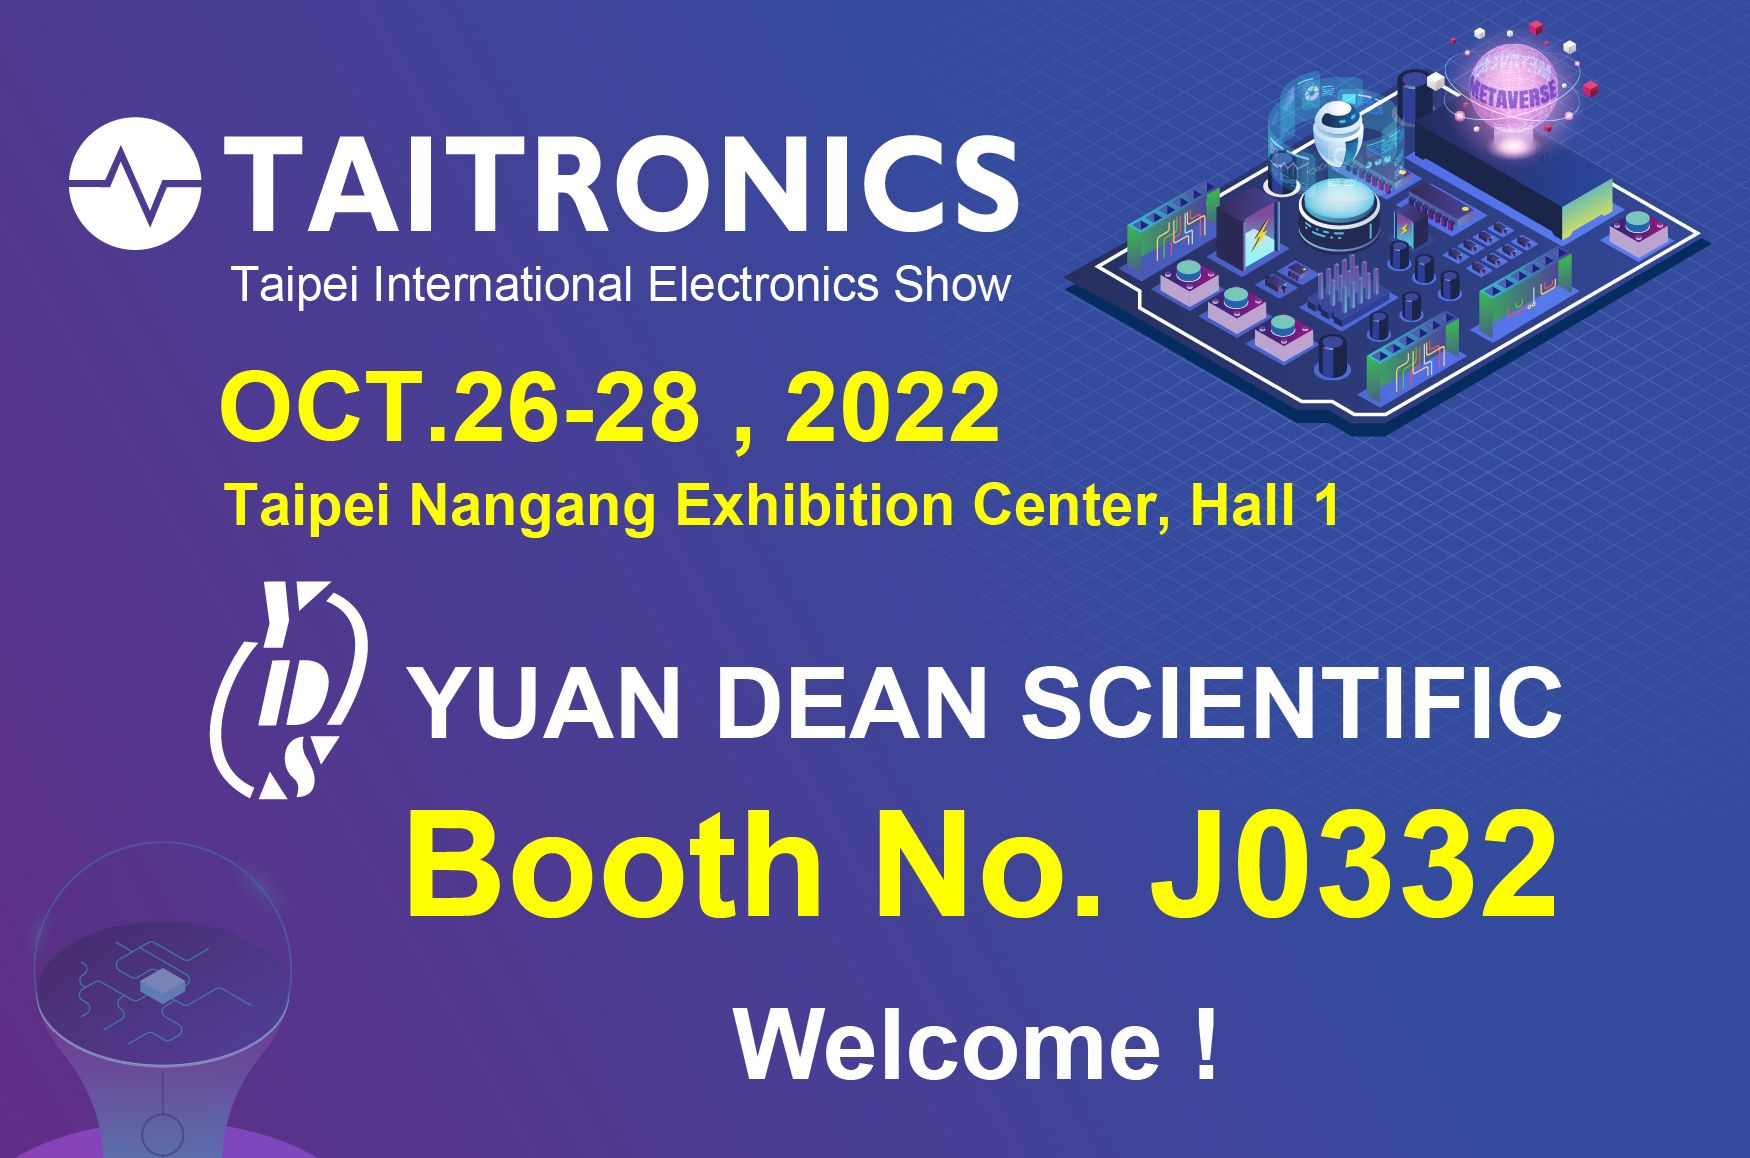 2022 TAITRONICS-bienvenue pour visiter le stand de Yuan Dean- J0332